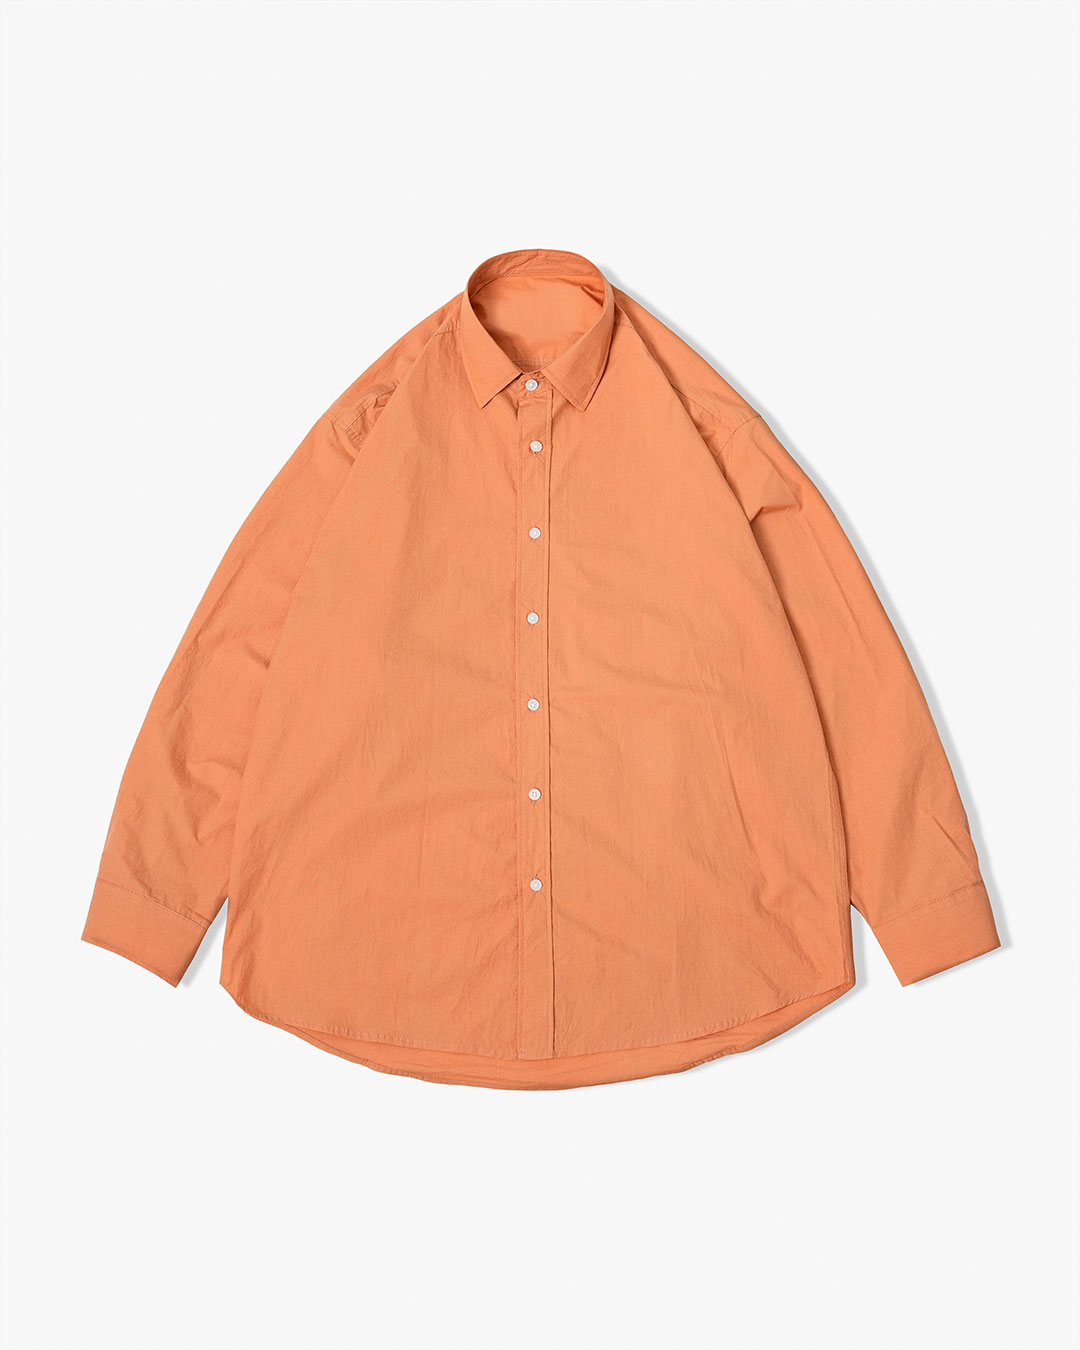 Paper Bio Washing Shirt (Burnt Orange)